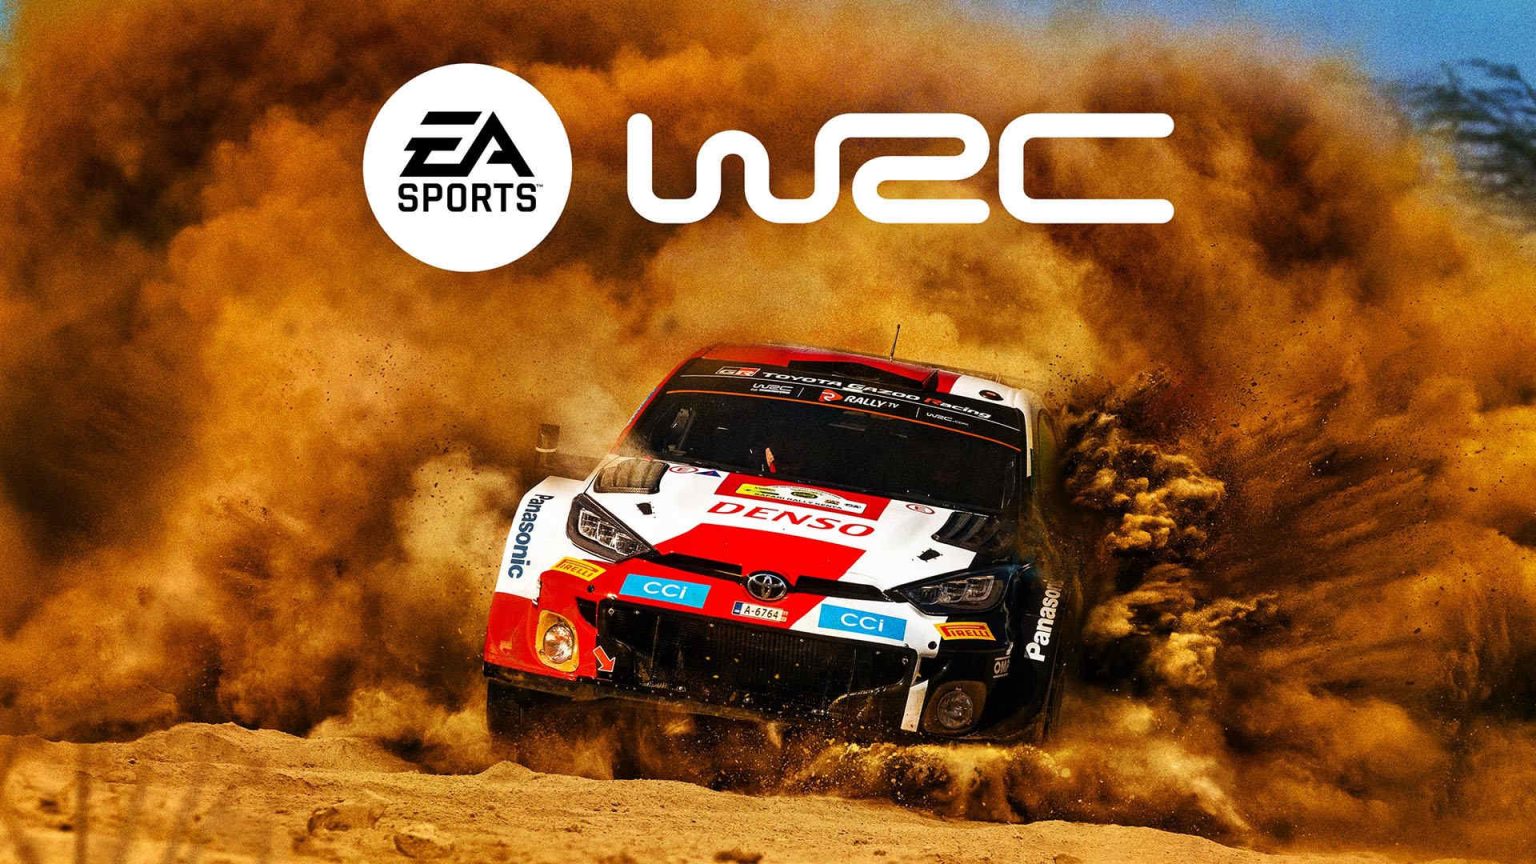 با انتشار تریلری از بازی EA Sports WRC رونمایی شد